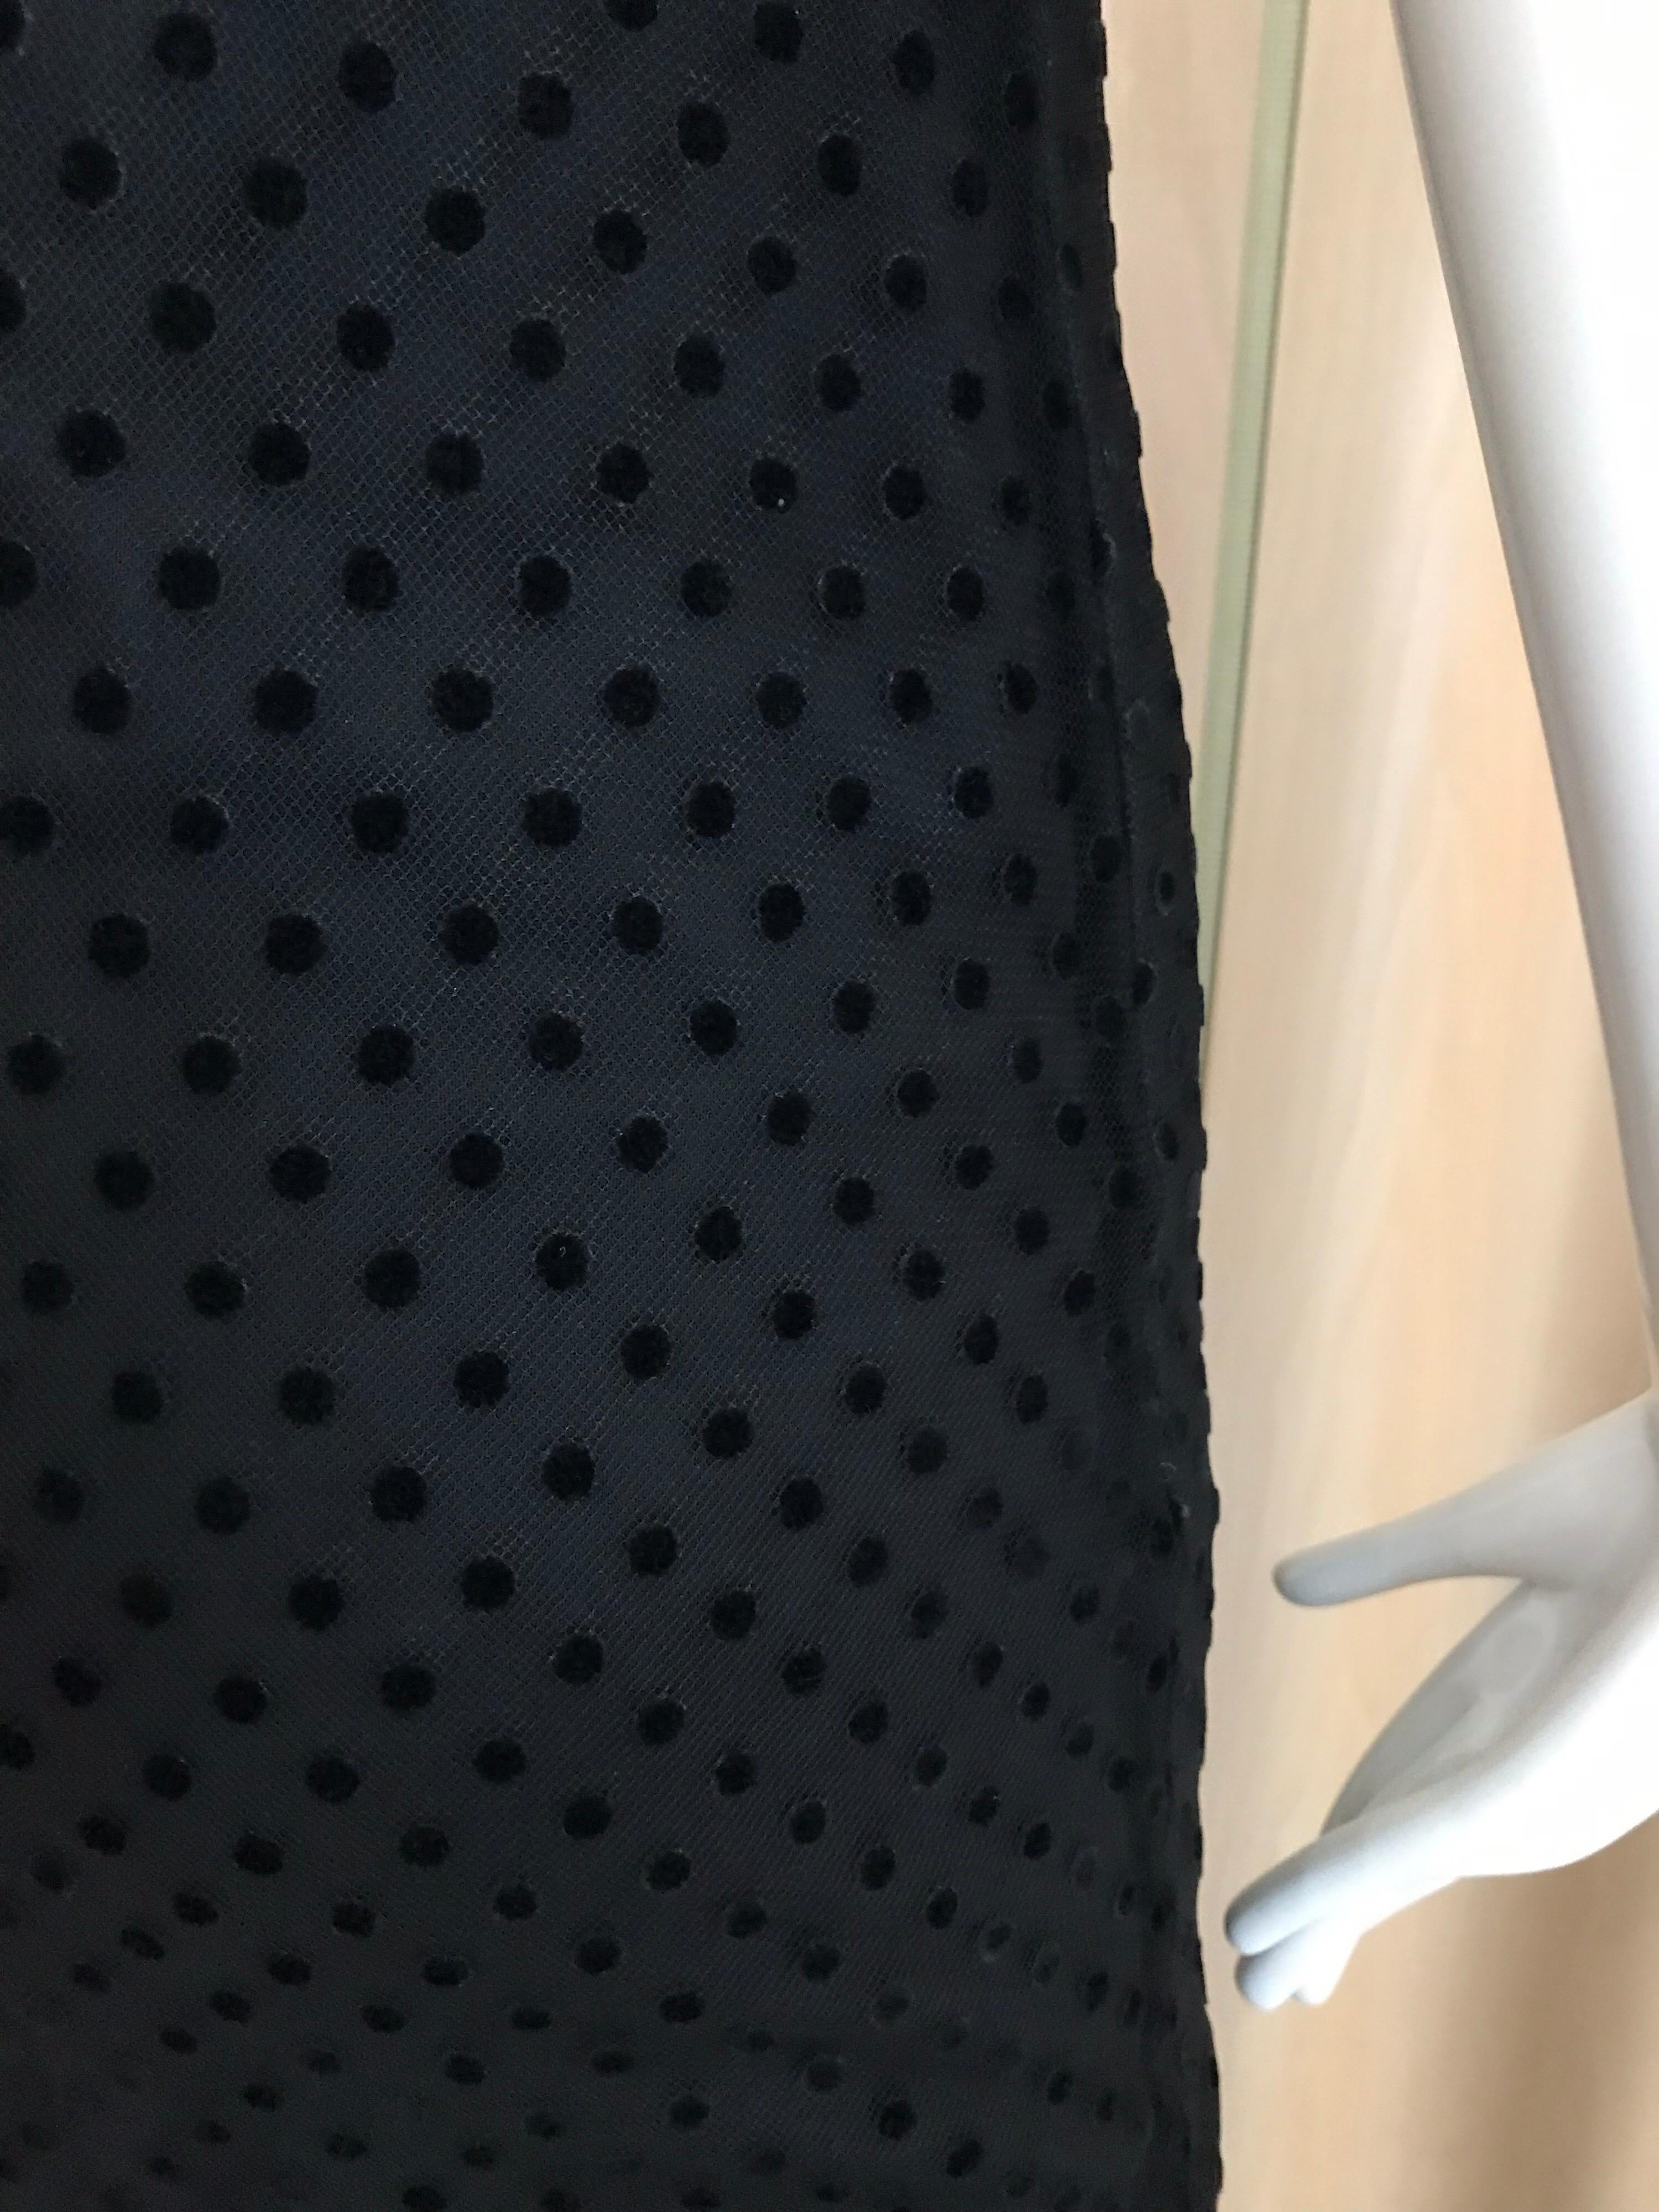 Women's Christian Dior Black Net Dress with Velvet Dot Dress